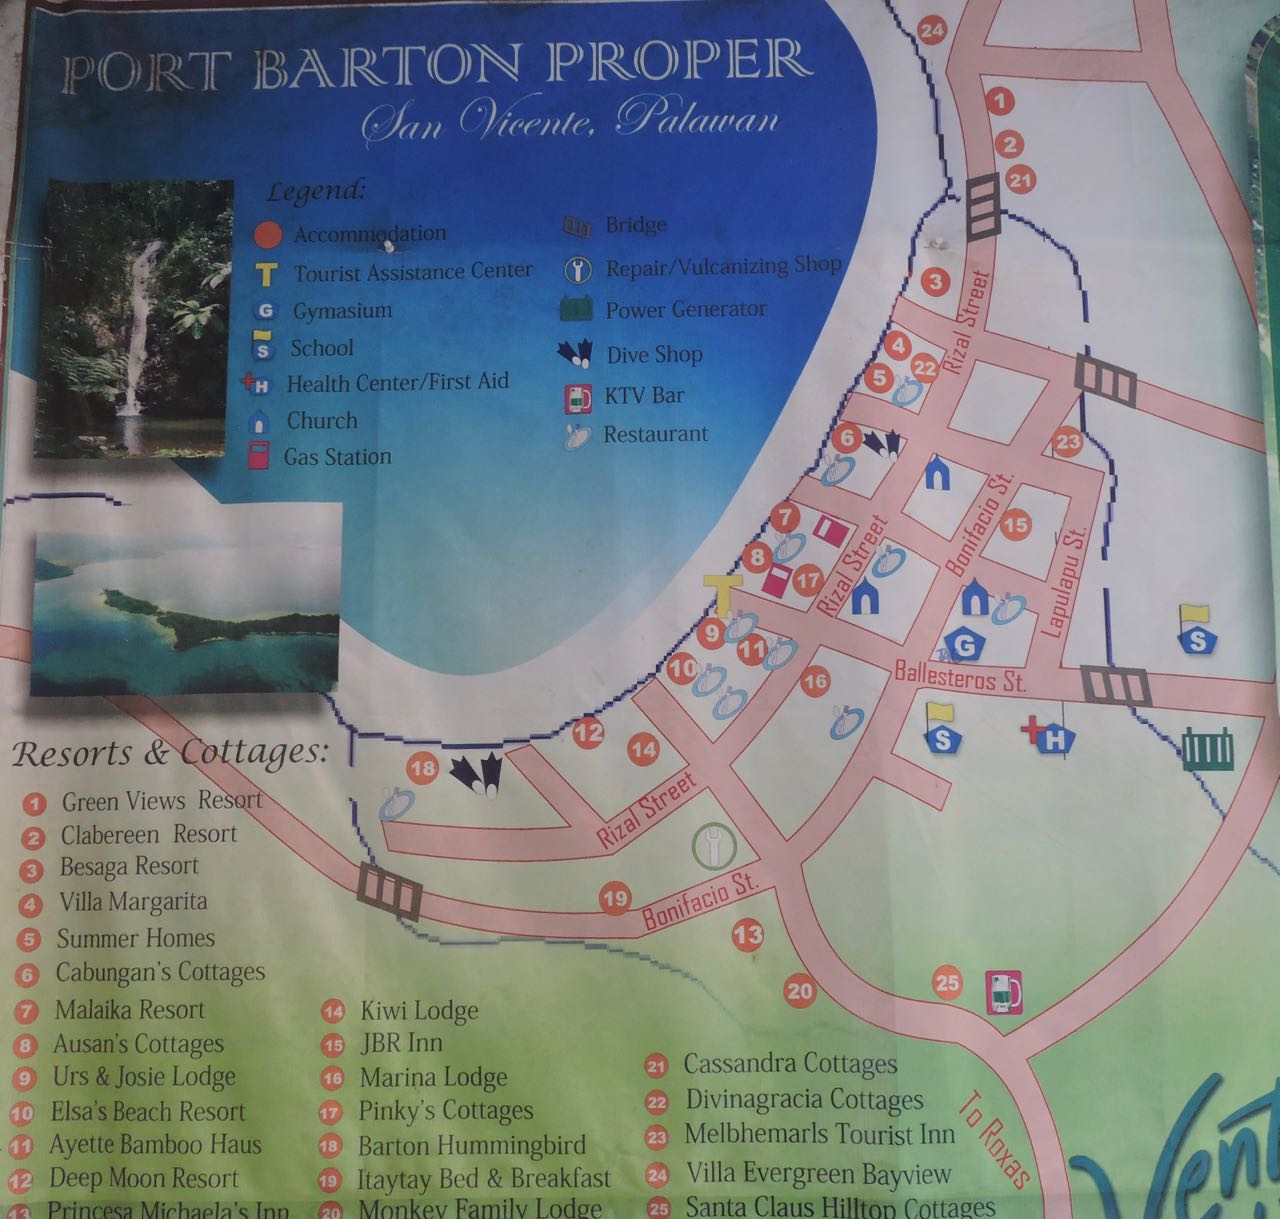 Port Barton descrizione